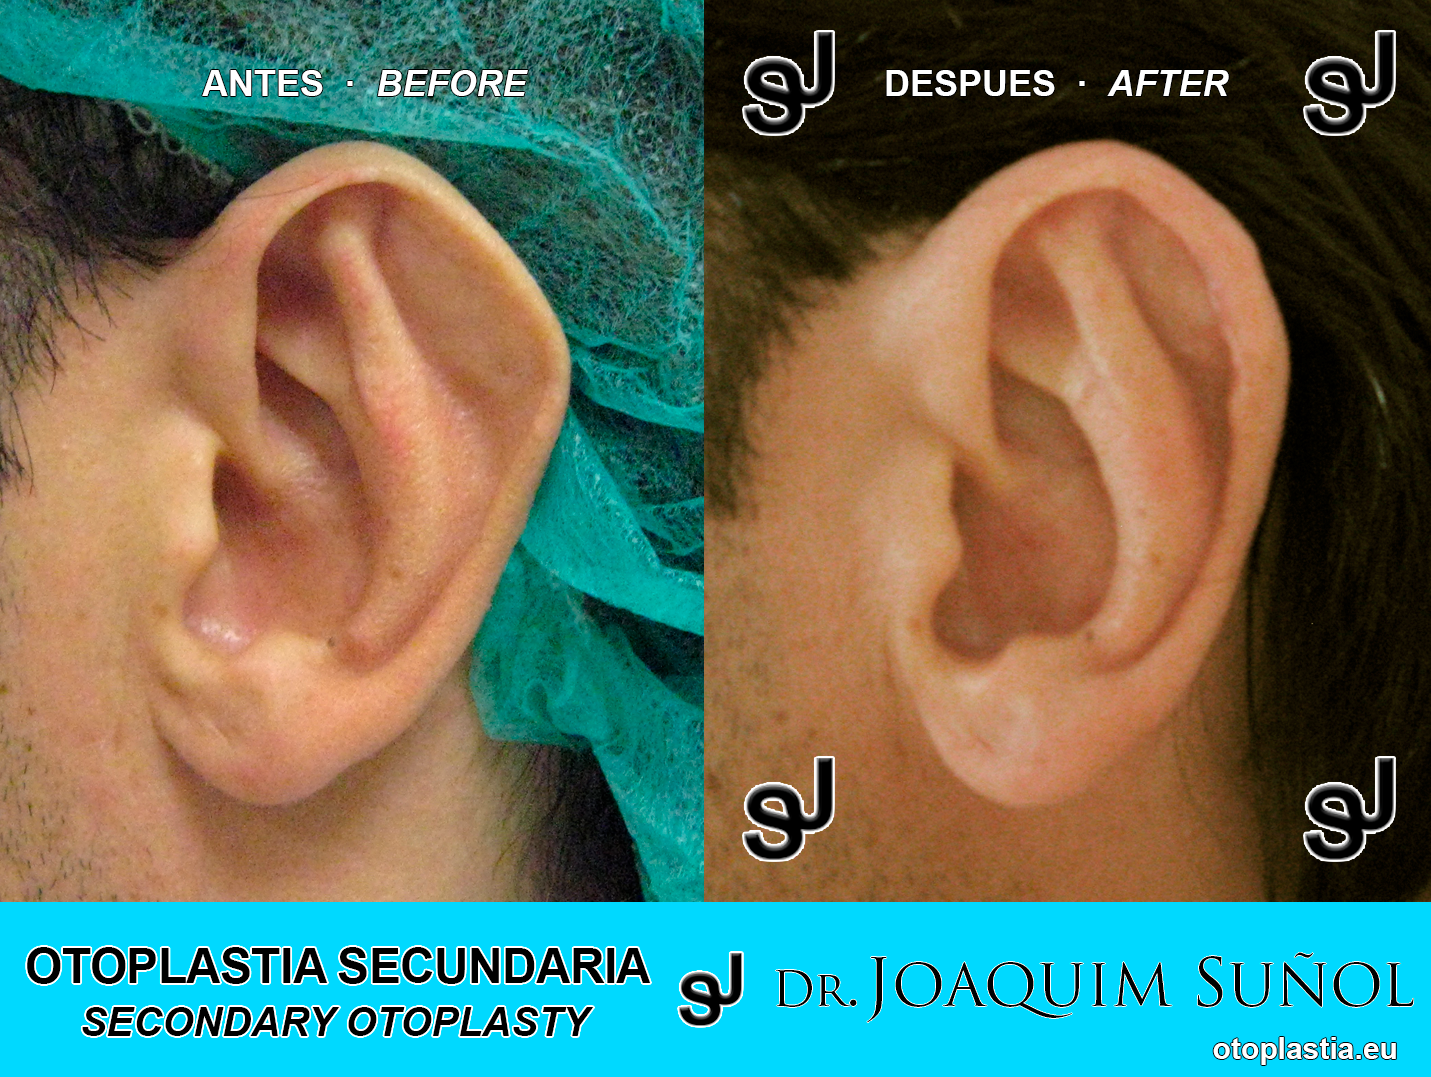 Reoperacion de orejas - otoplastia secundaria: Resultados reales Antes y Despues - Dr. Joaquim Suñol